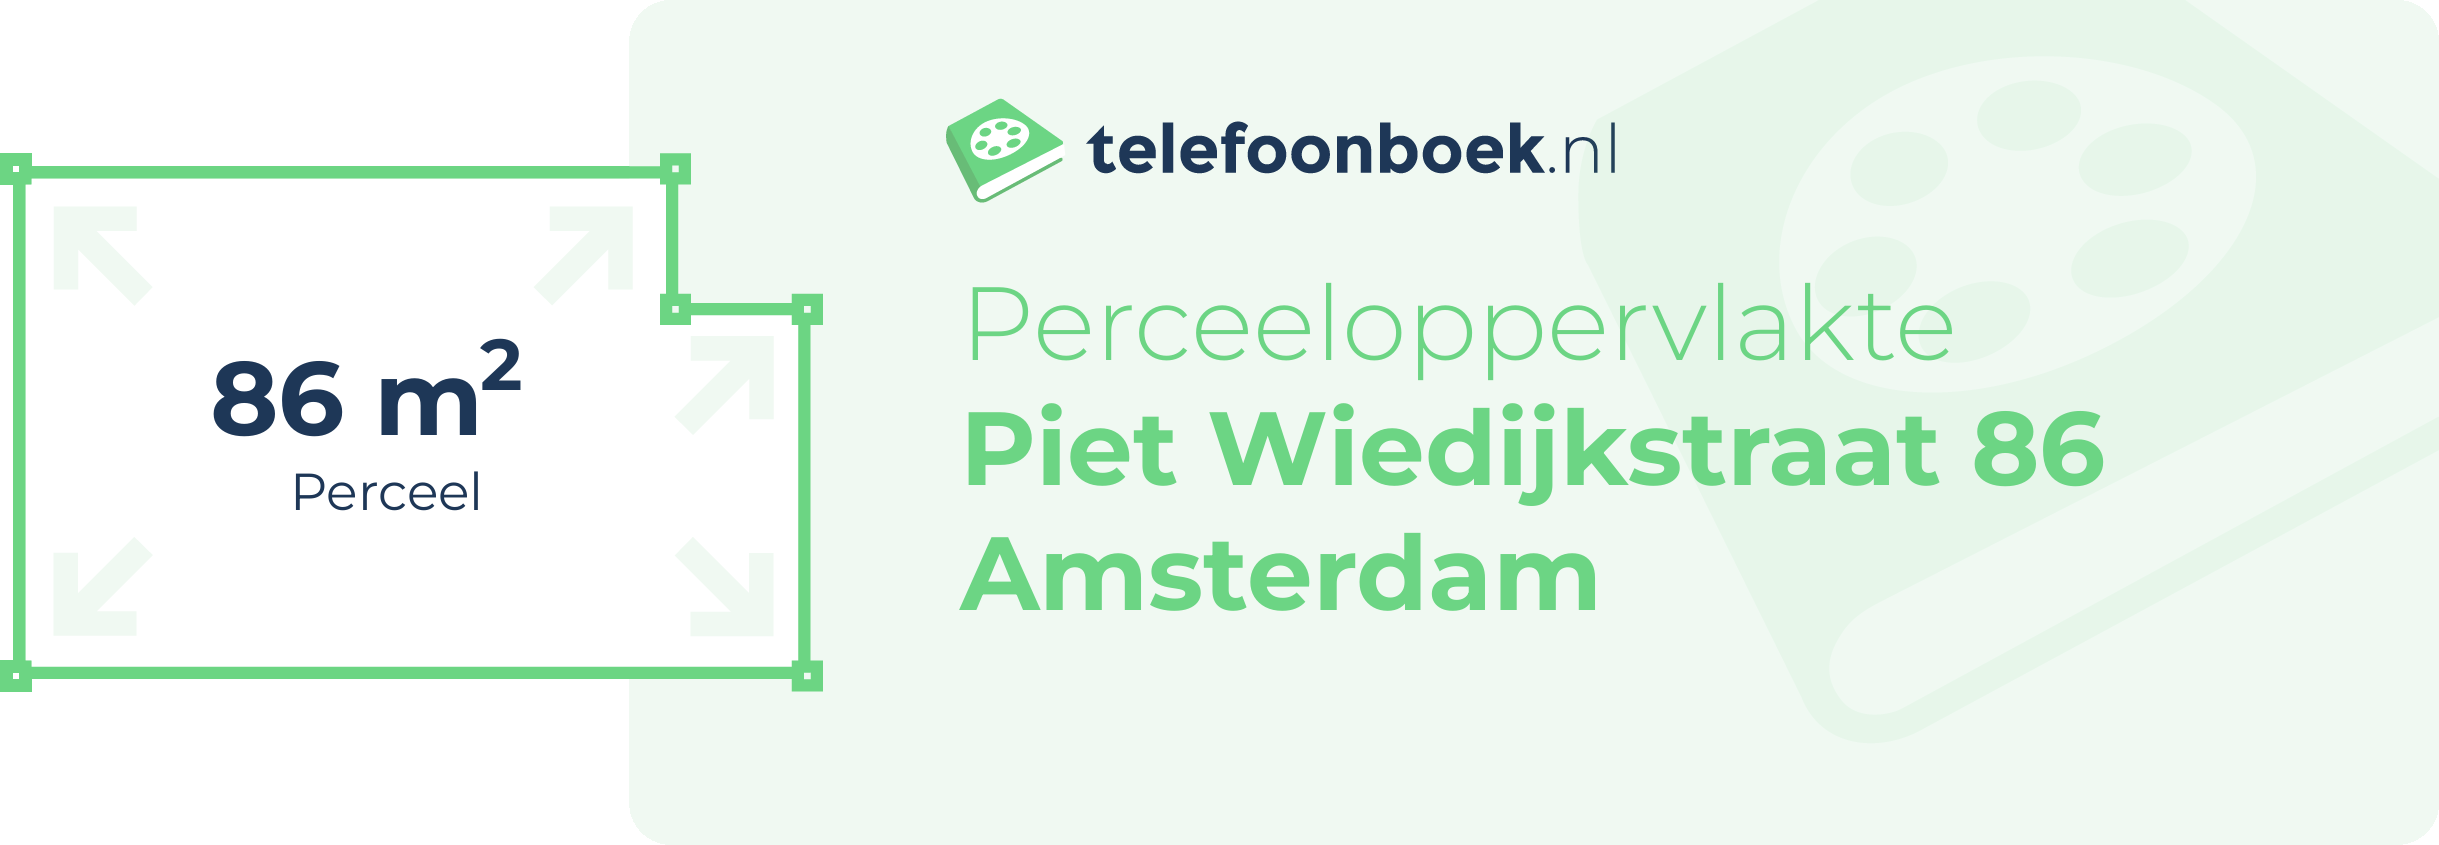 Perceeloppervlakte Piet Wiedijkstraat 86 Amsterdam